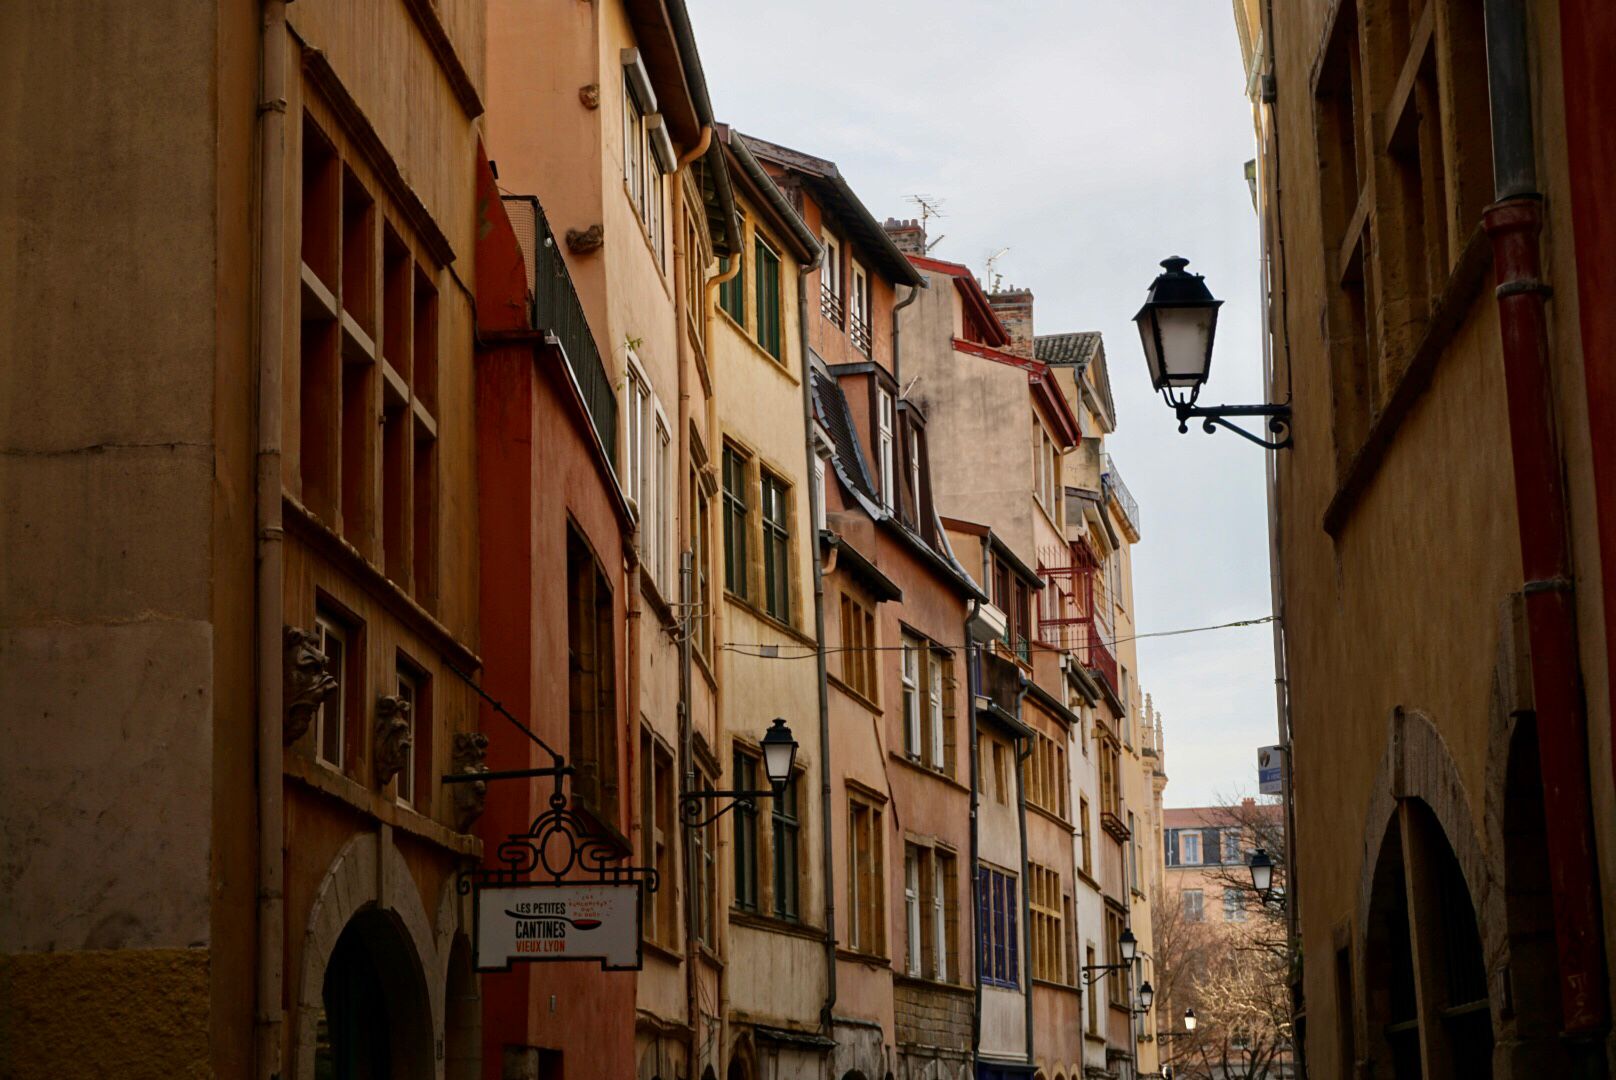 Schmale Straße, gesäumt von mehrstöckigen, farbenfrohen Altbauhäusern, mit Kopfsteinpflaster und einer klassischen Straßenlaterne